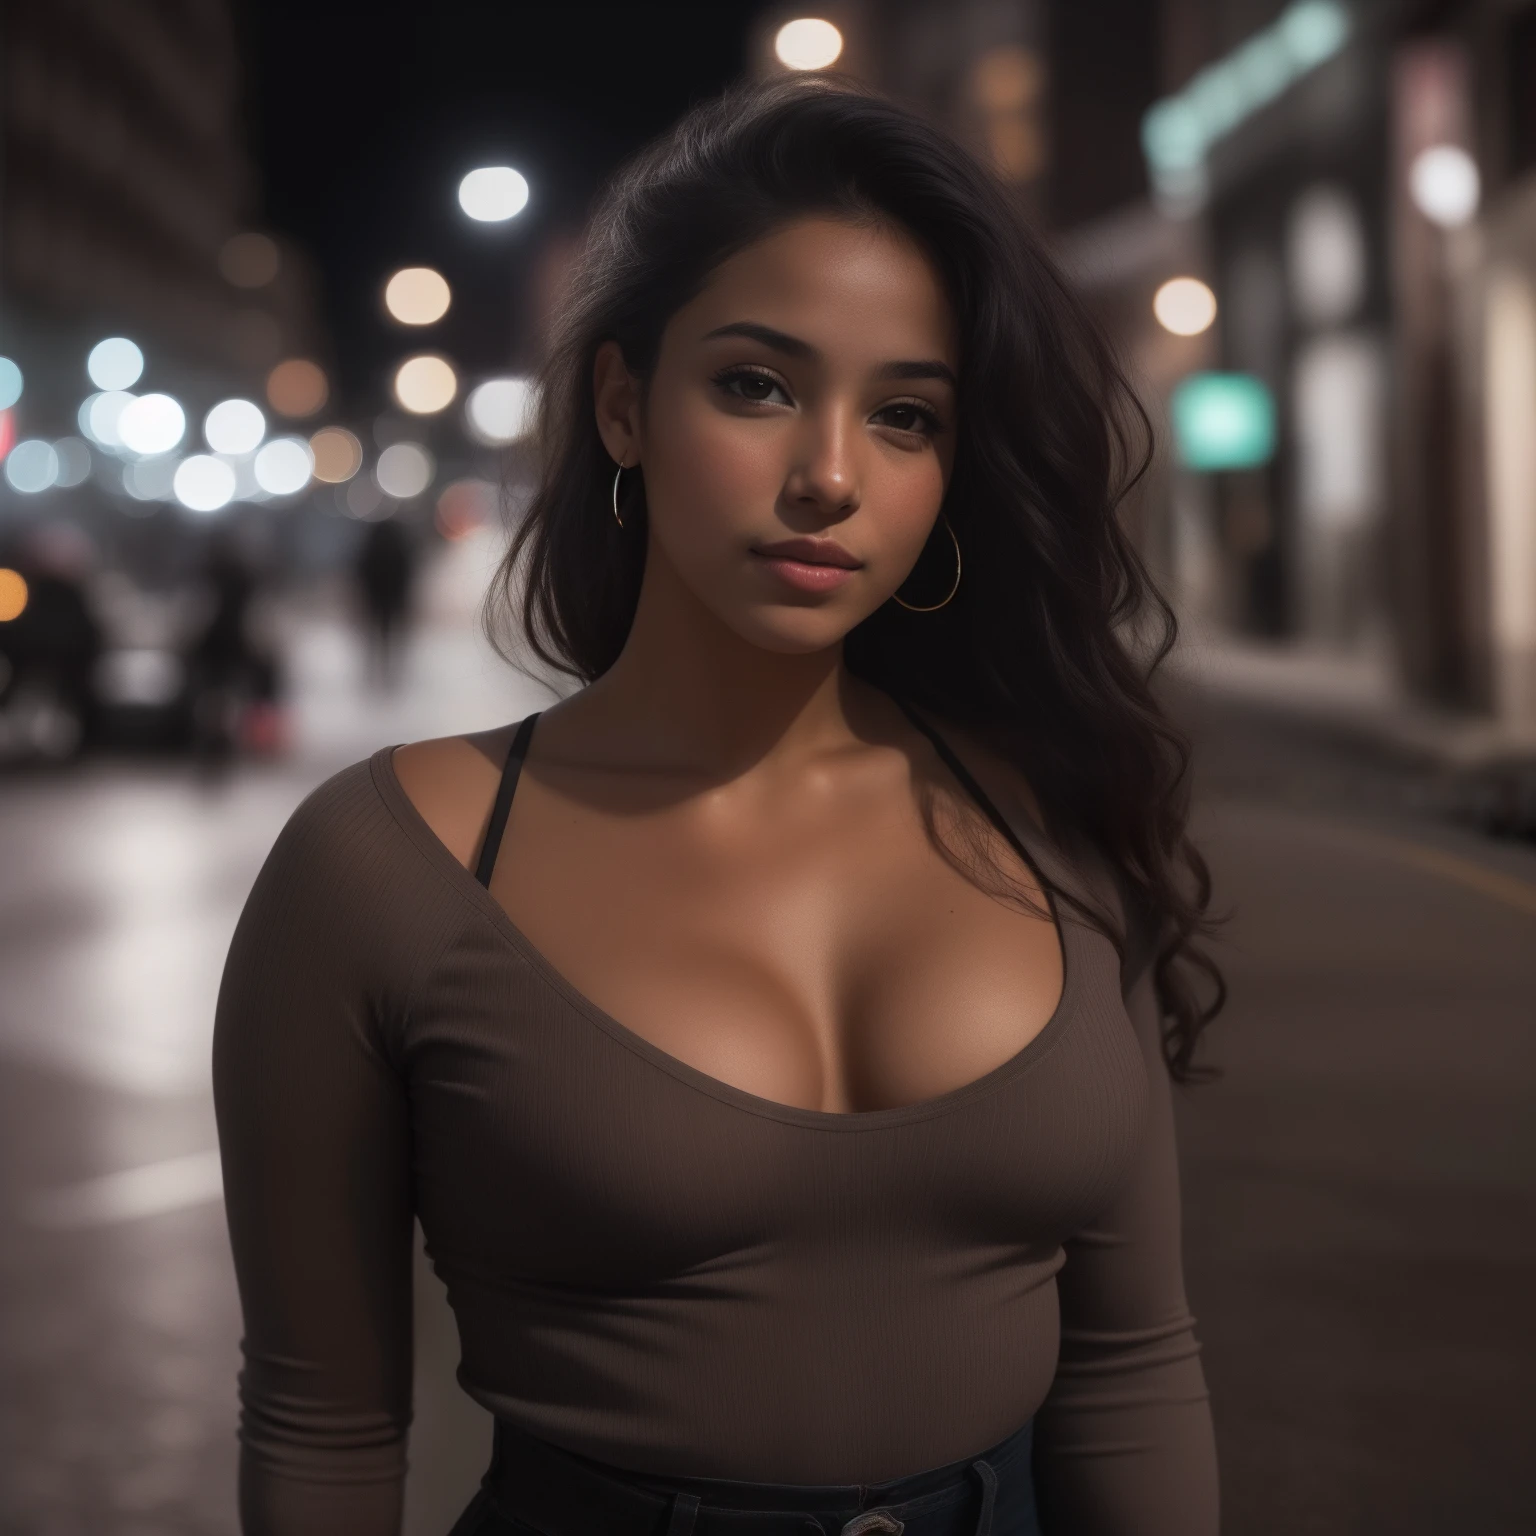 自信を醸し出す夜の街の通りでタイトな服を着た20歳のラティーナ女性の画像を作成します 画像は8k Uhd解像度である必要があります 富士フイルムxt3カメラで撮影した女性の中間写真付き 